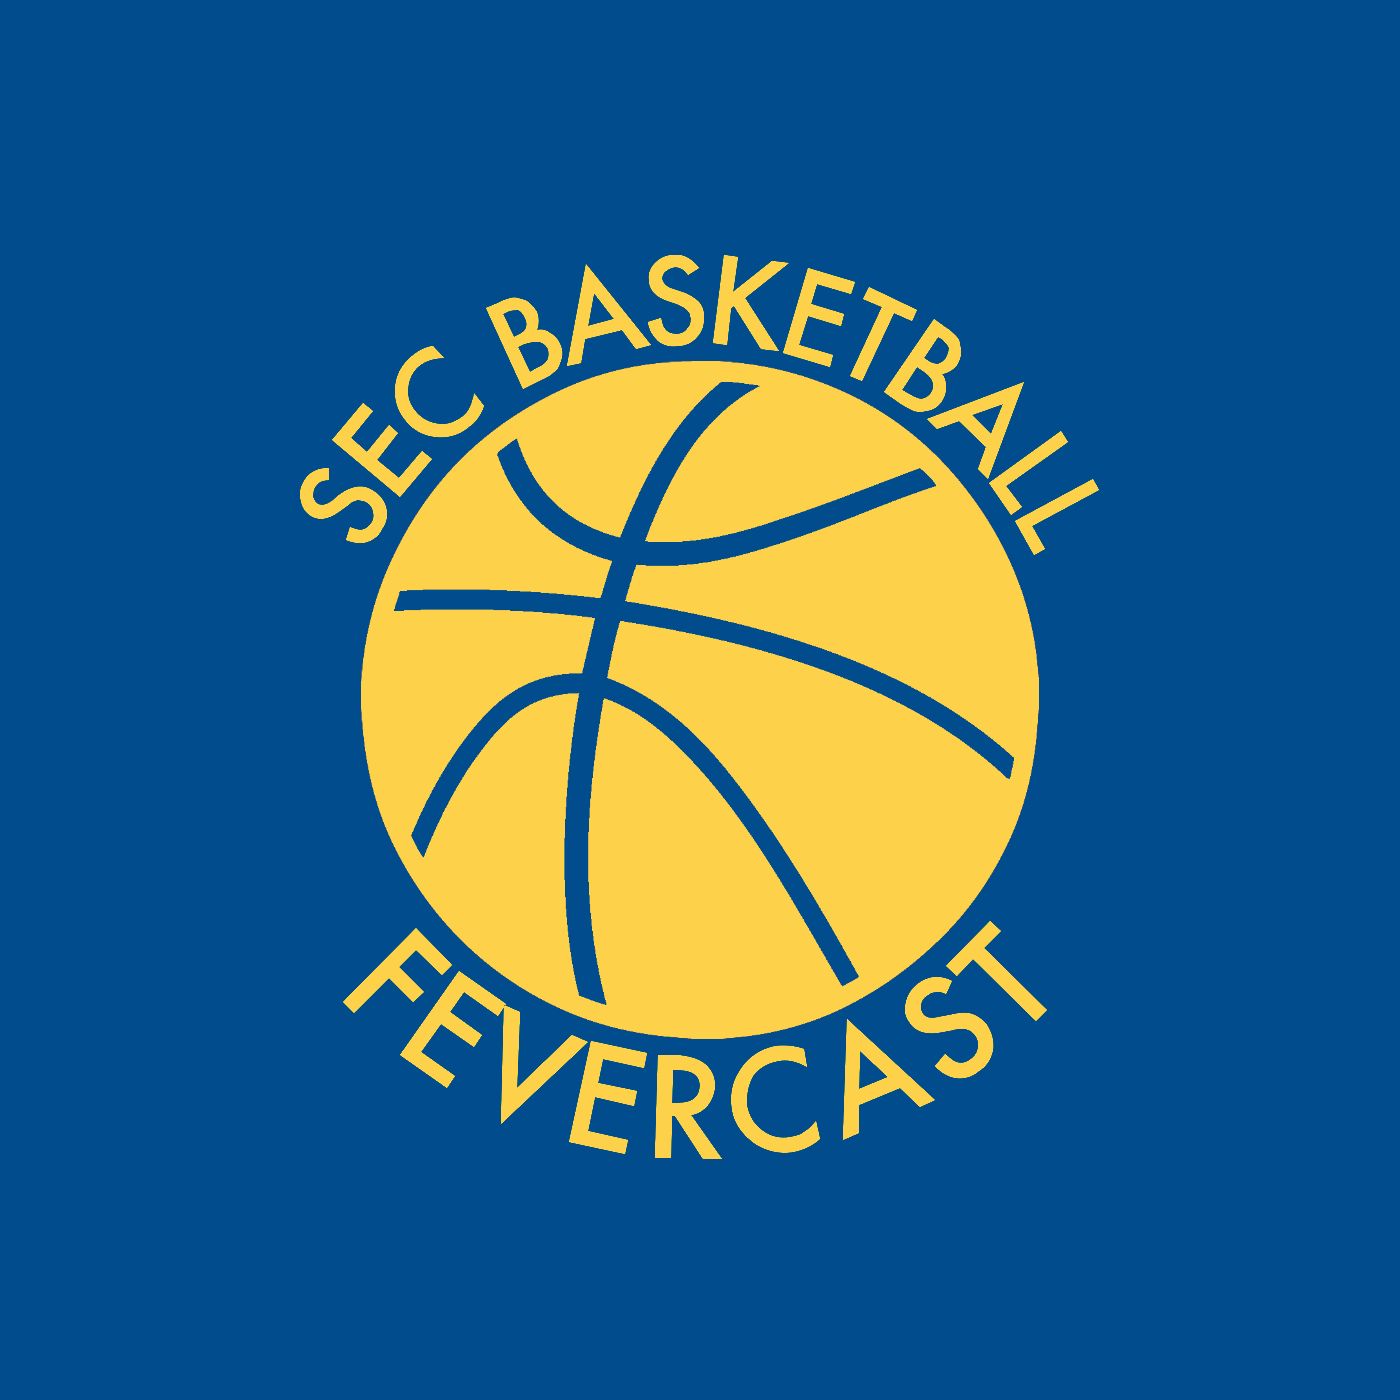 SEC Basketball Fevercast